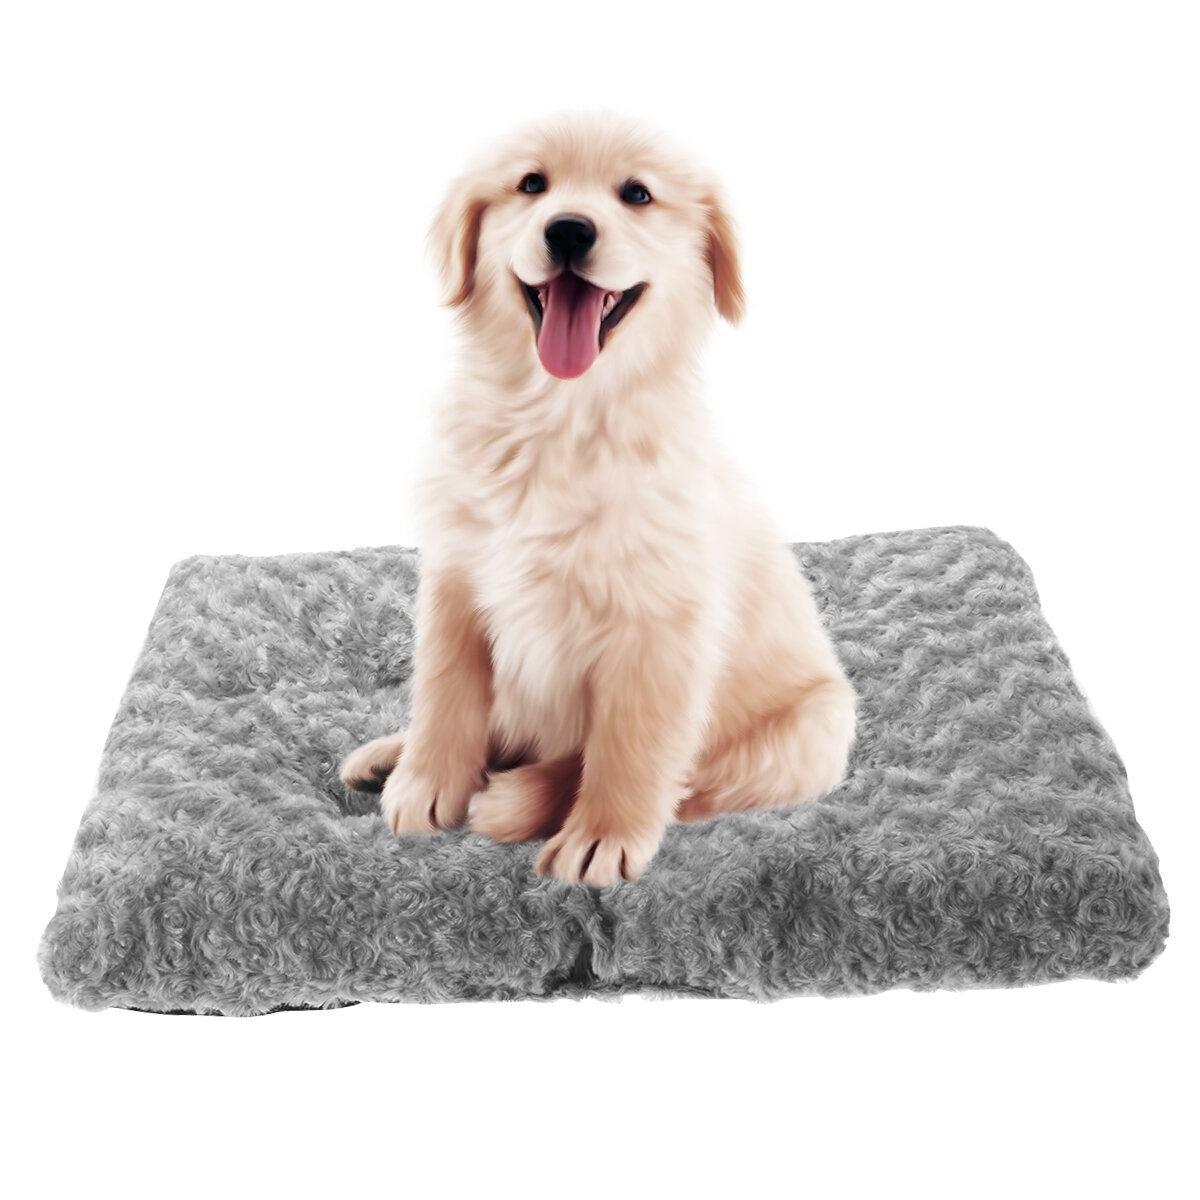 Hondenbedden voor grote honden, orthopedisch extra groot hondenbed met waterdichte voering, antislip